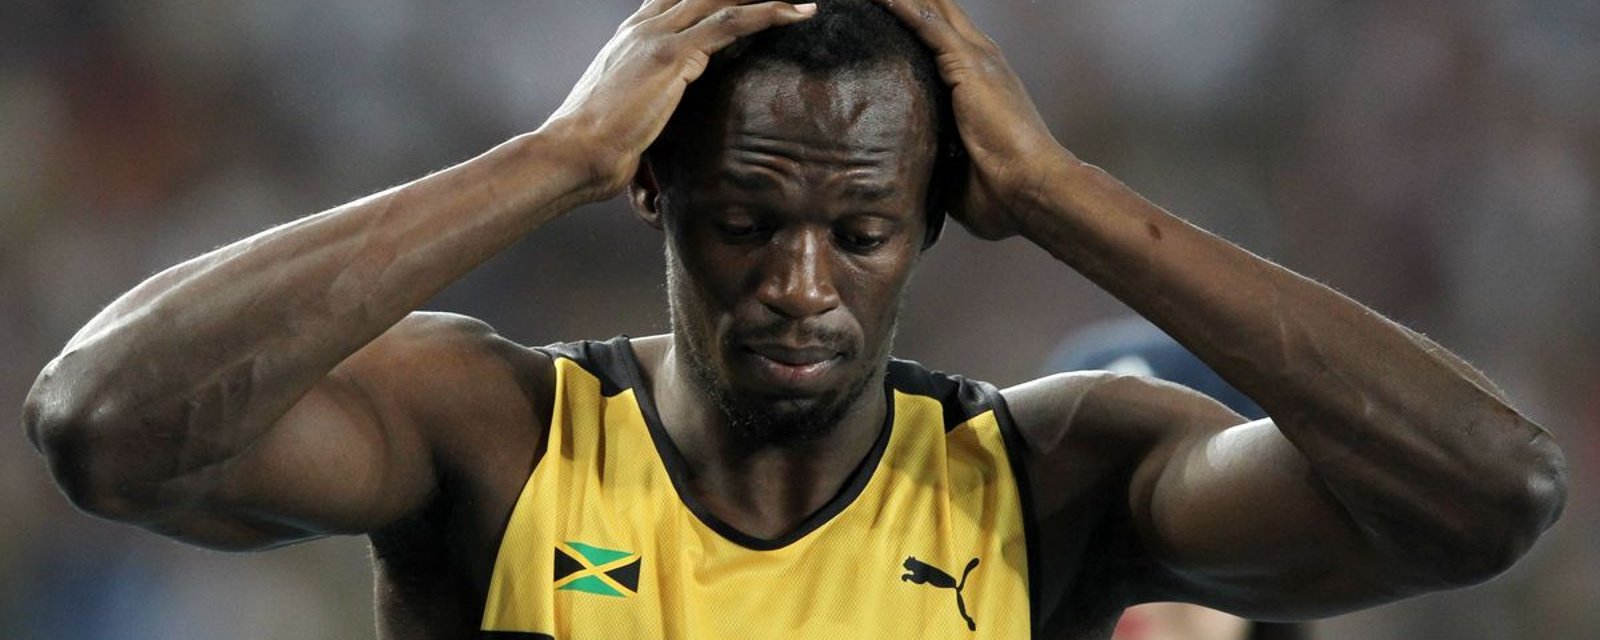 Usain Bolt se rapproche de la pauvreté après avoir été victime d'un terrible vol 